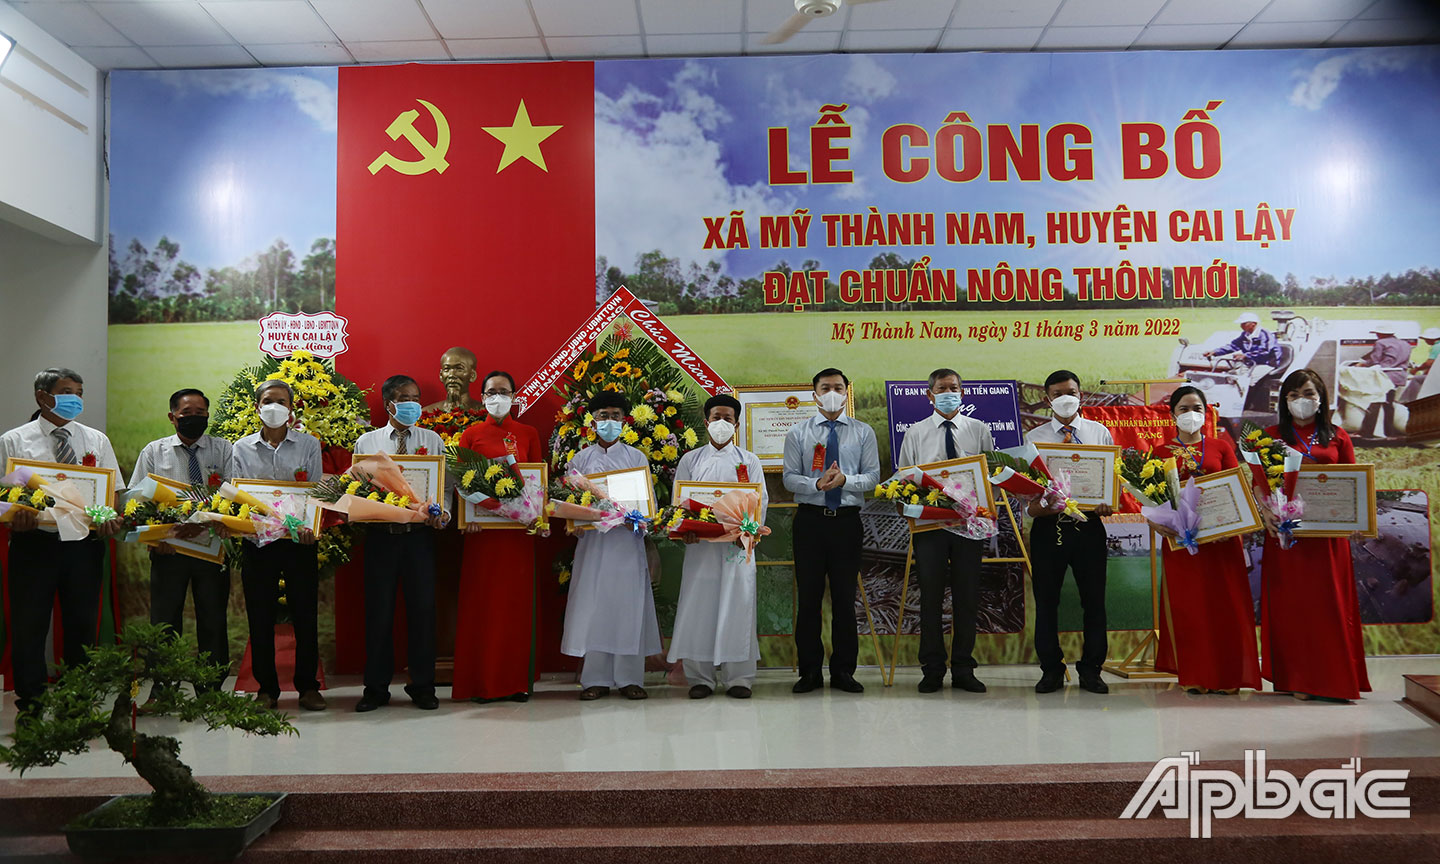 Chủ tịch UBND huyện Cai Lậy Trần Quốc Bình trao giấy khen cho 